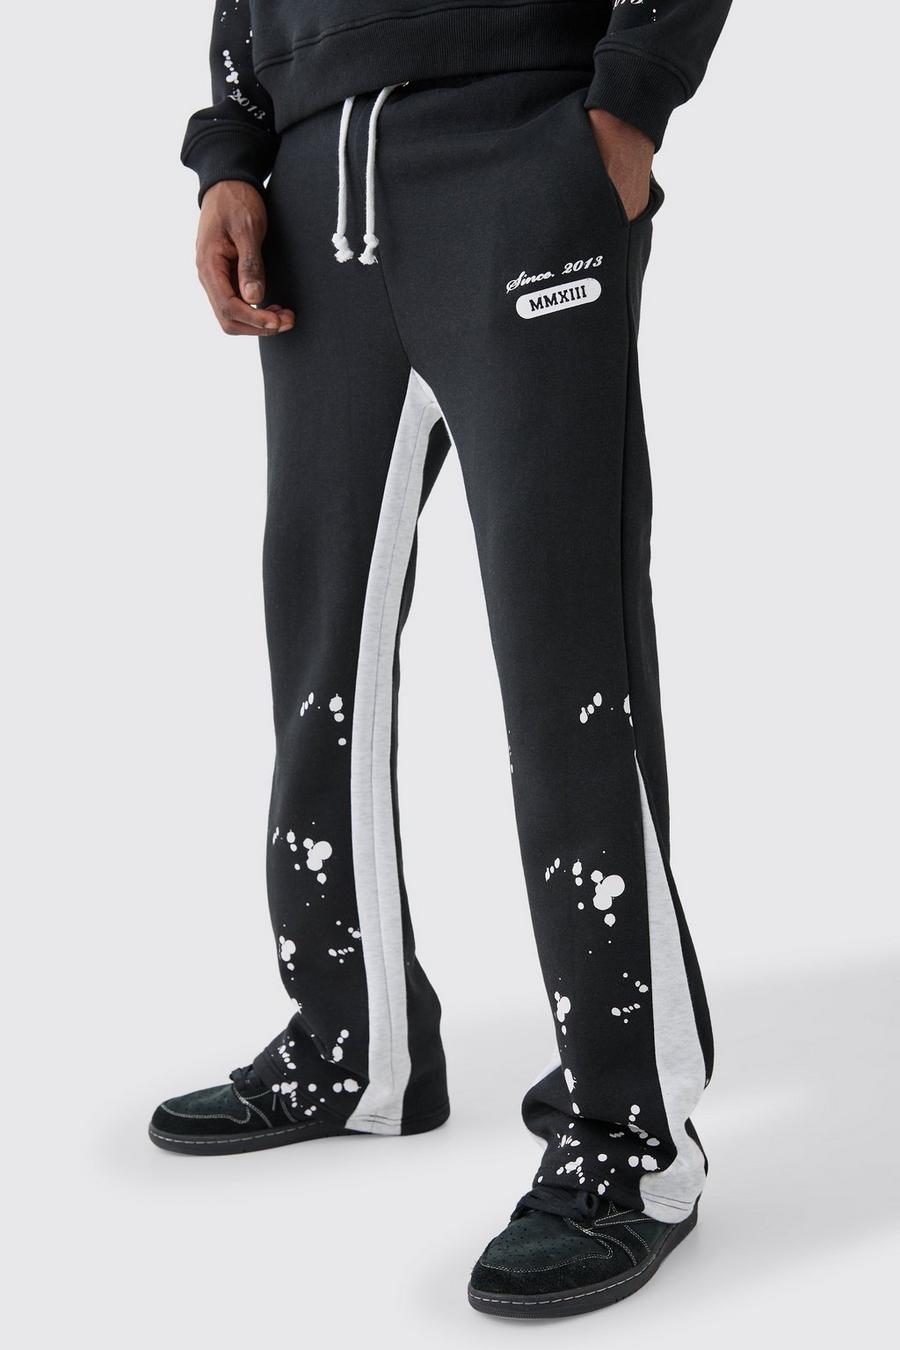 Pantalón deportivo ajustado Homme con refuerzos y salpicaduras de pintura, Black